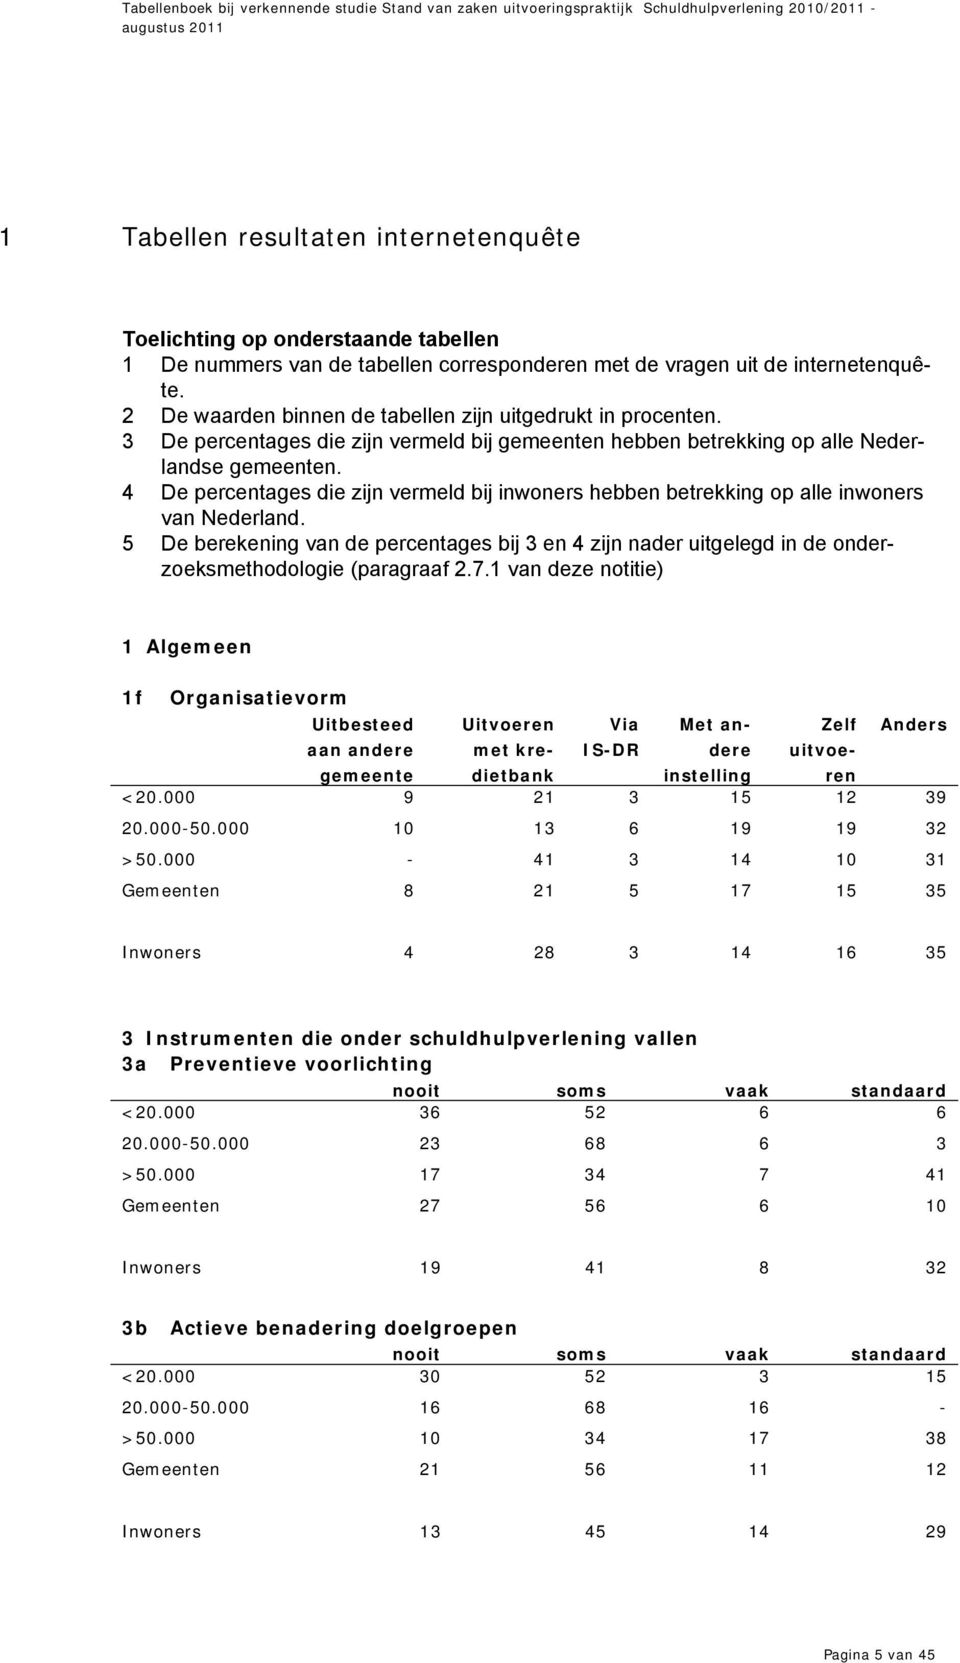 4 De percentages die zijn vermeld bij inwoners hebben betrekking op alle inwoners van Nederland.